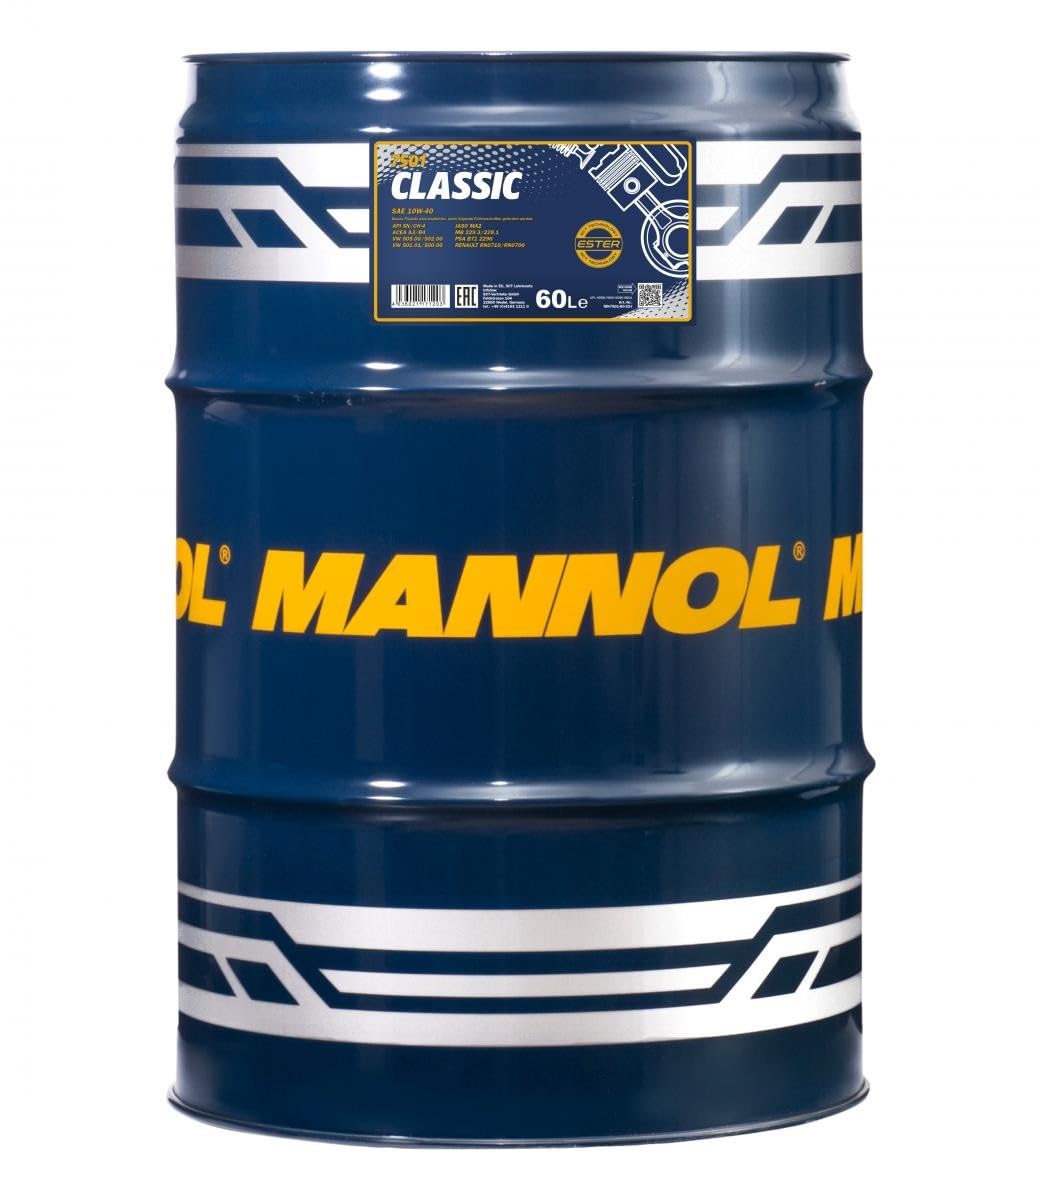 MANNOL Classic Motoröl 10W40 SM/CF, 60 L Fass von MANNOL